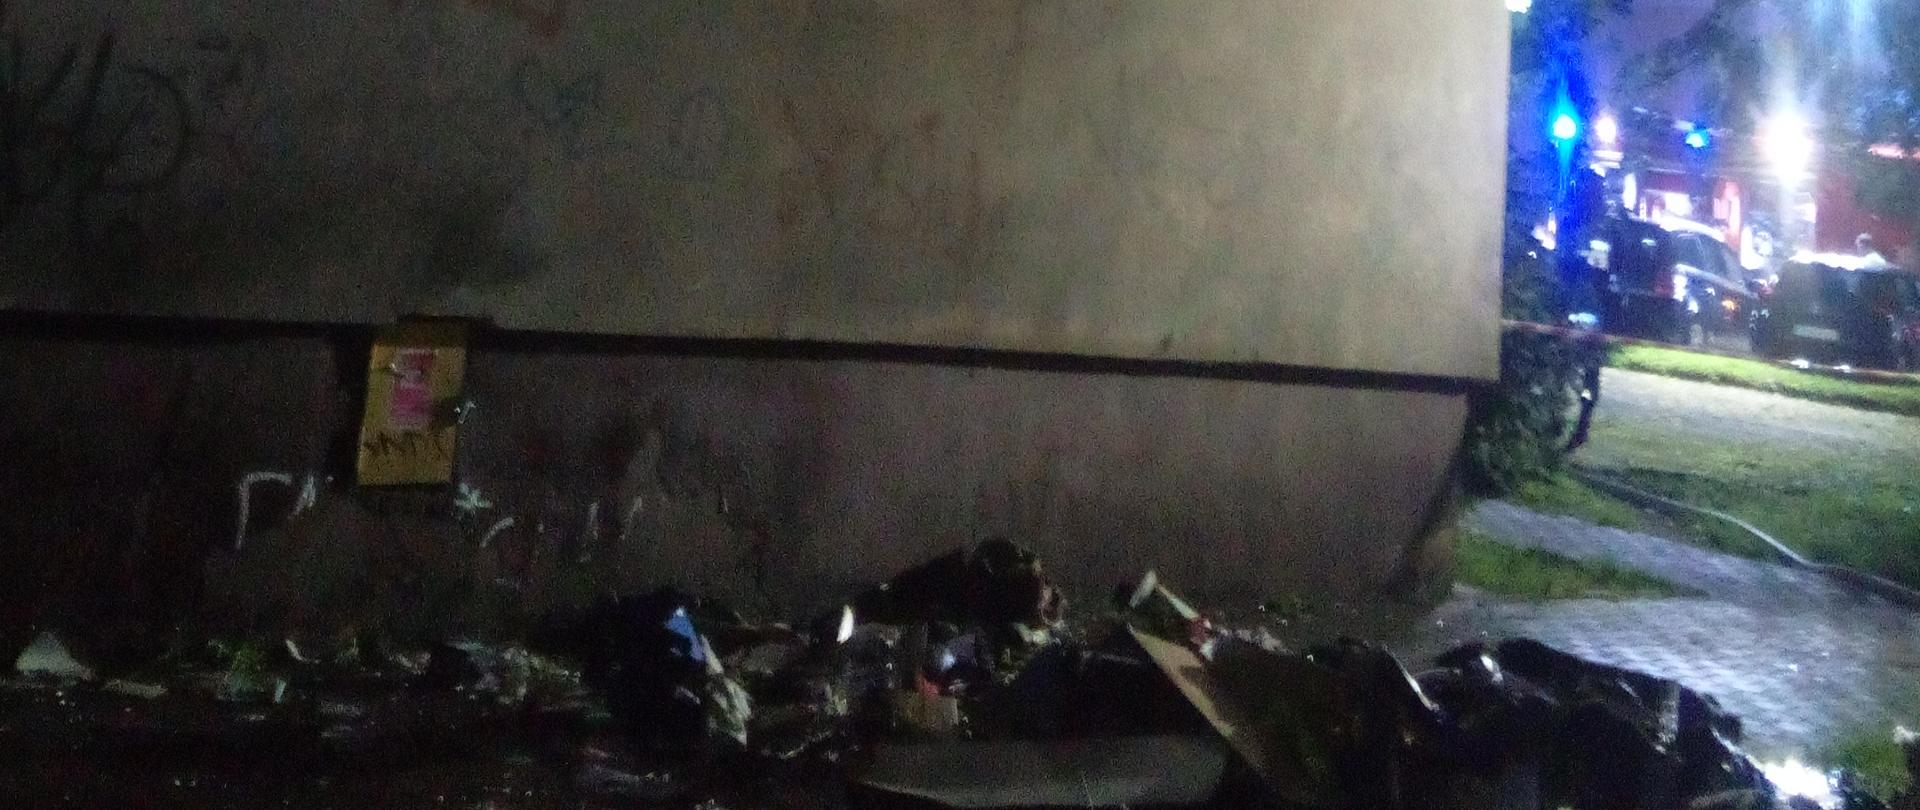 Zdjęcie przedstawia elewację bloku 4 piętrowego. Na dole widać pozostałości po pożarze wyrzucone przez okno. W tle znajduje się samochód straży pożarnej